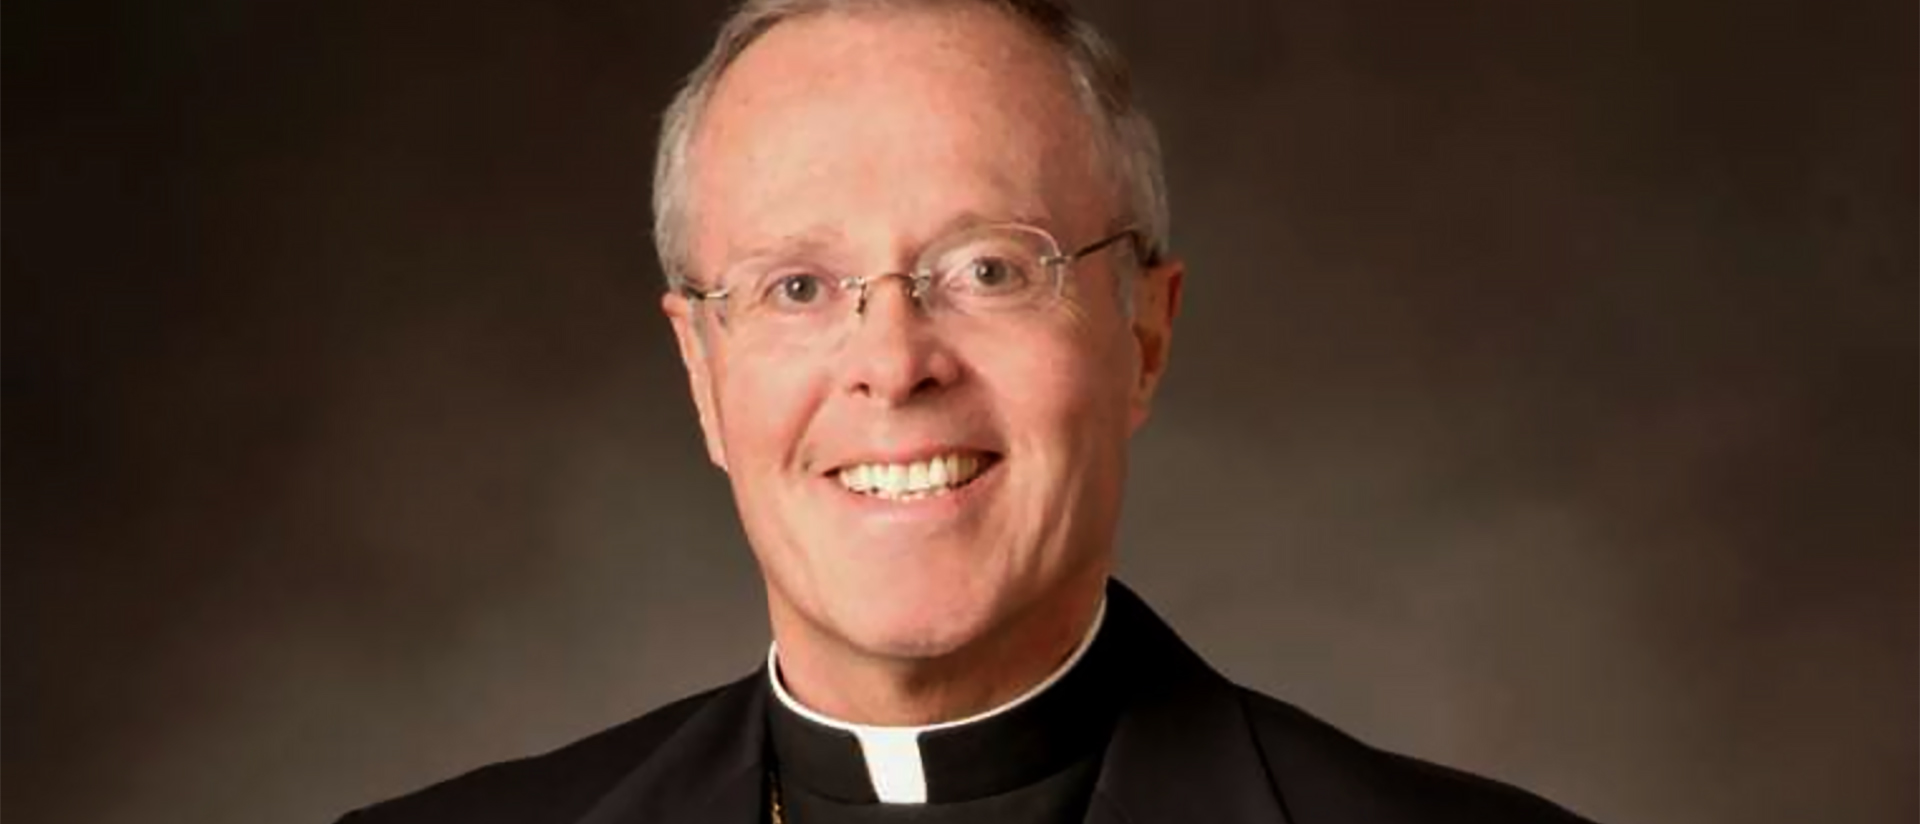 Mgr Michael Joseph Hoeppner, évêque de Crookston, dans le Minnesota, jusqu'en 2021 | © Twitter / crookston.org